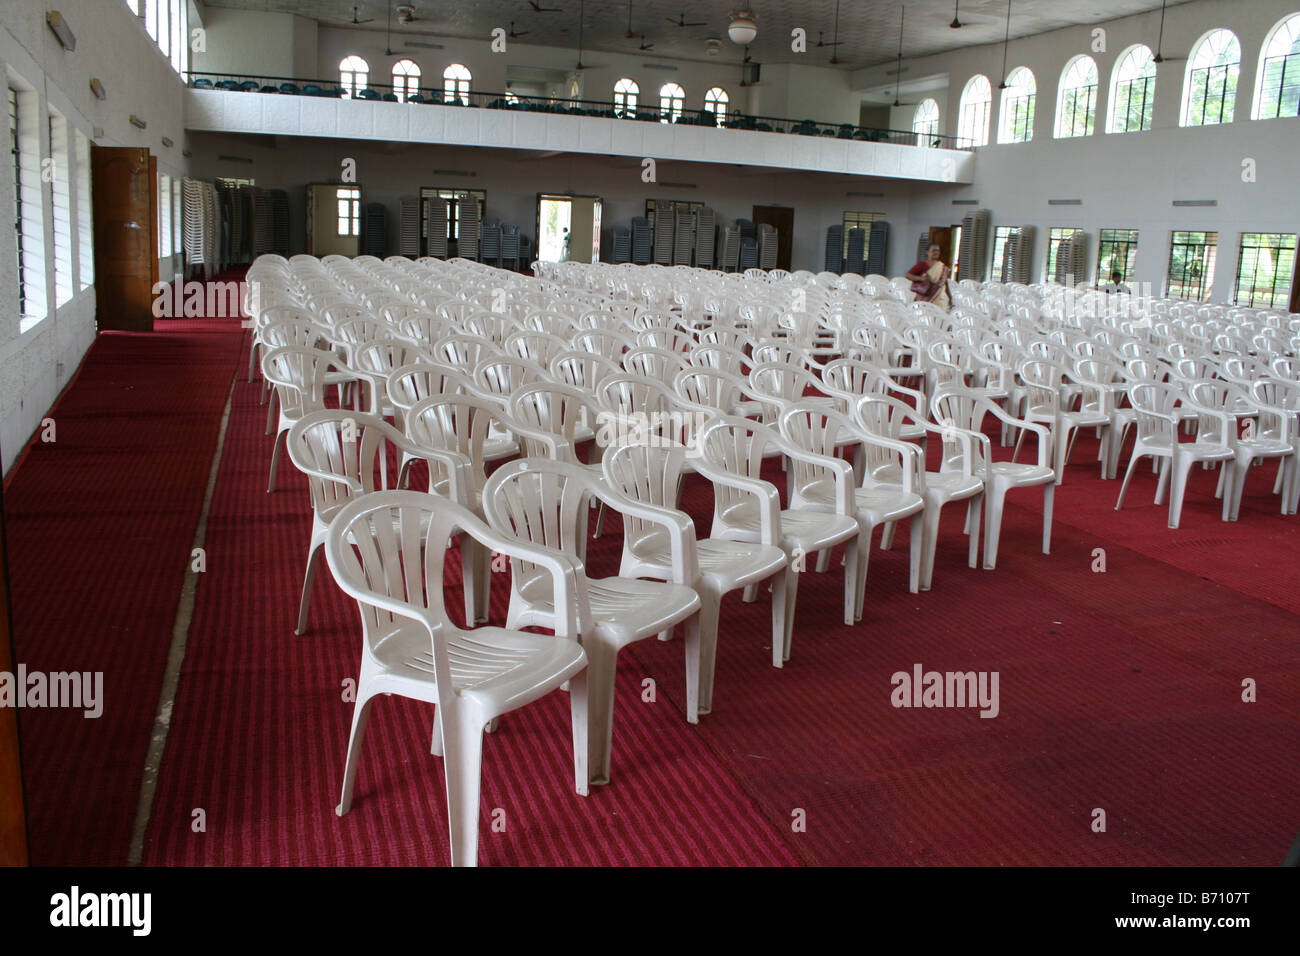 Grand nombre de chaises de couleur blanche sur le tapis rouge pour organiser la fonction publique importante ou à une réunion dans un immense hall avec balcon Banque D'Images